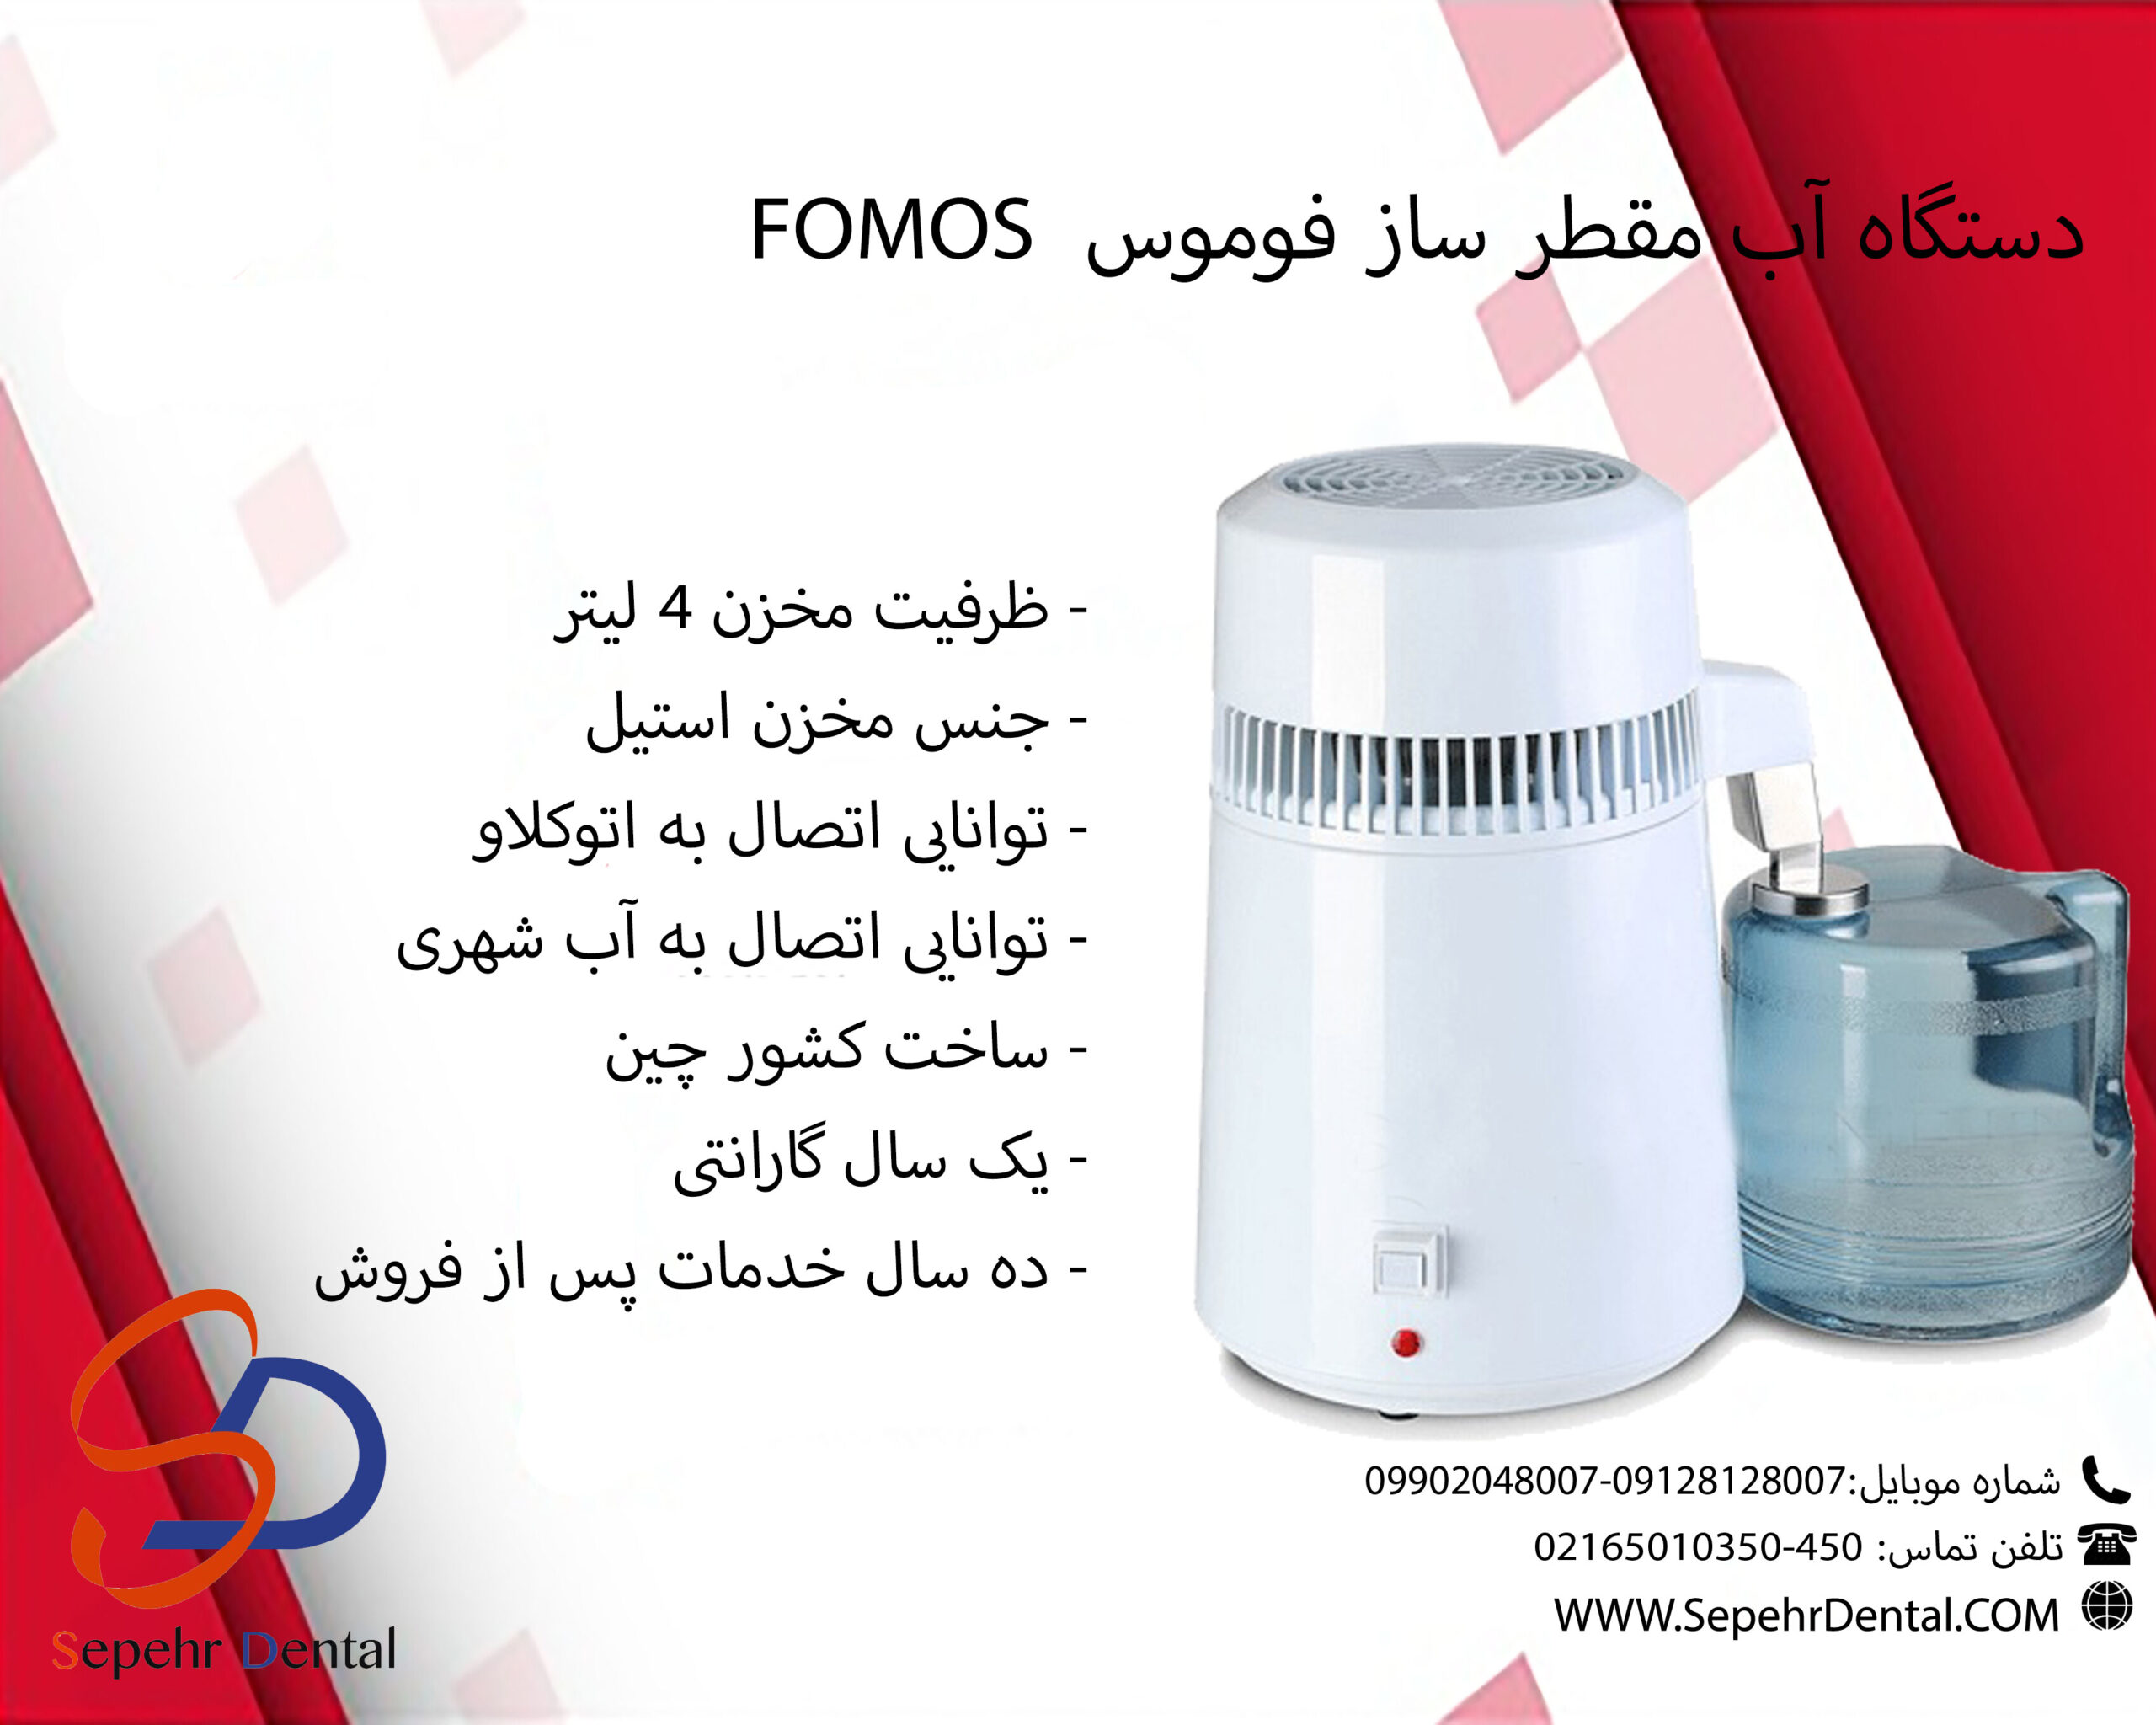 دستگاه آب مقطر ساز فوموس FOMOS